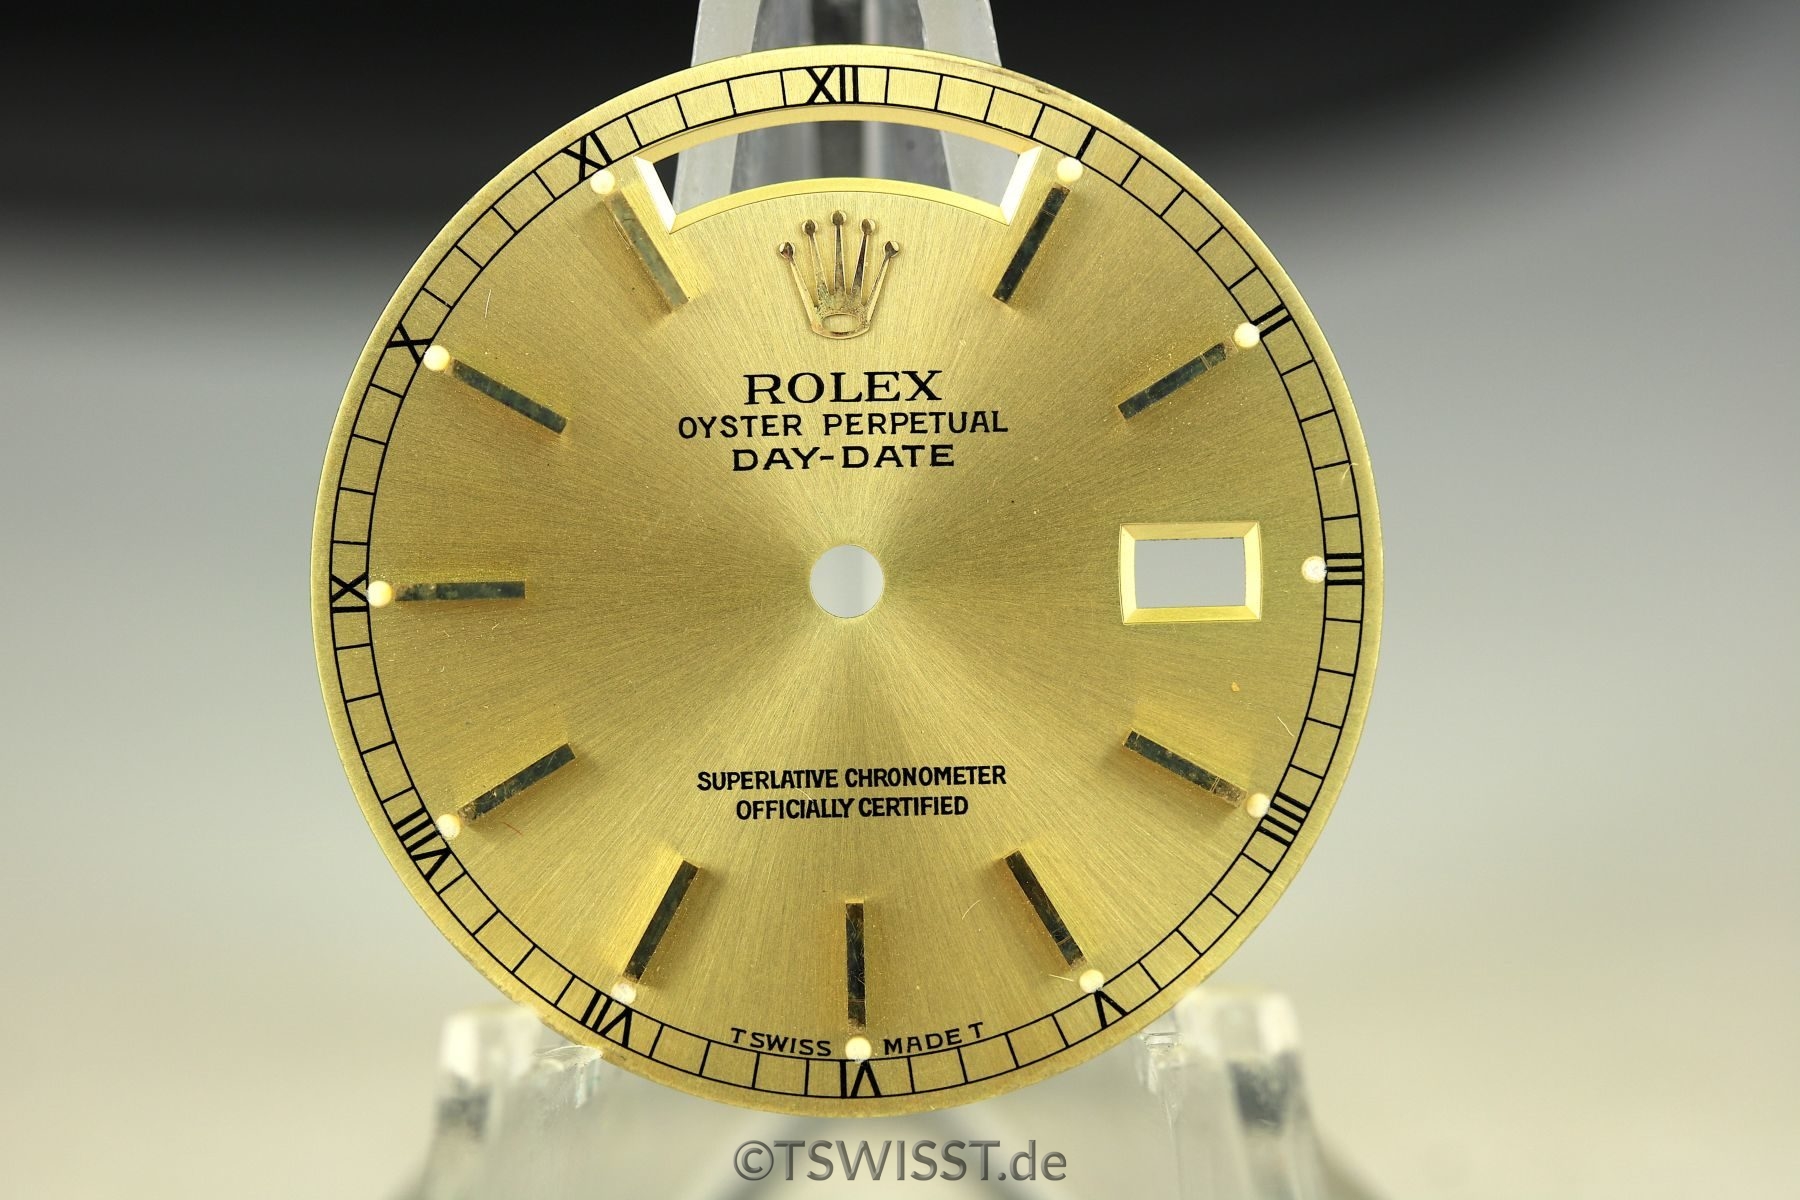 Rolex Daydate dial